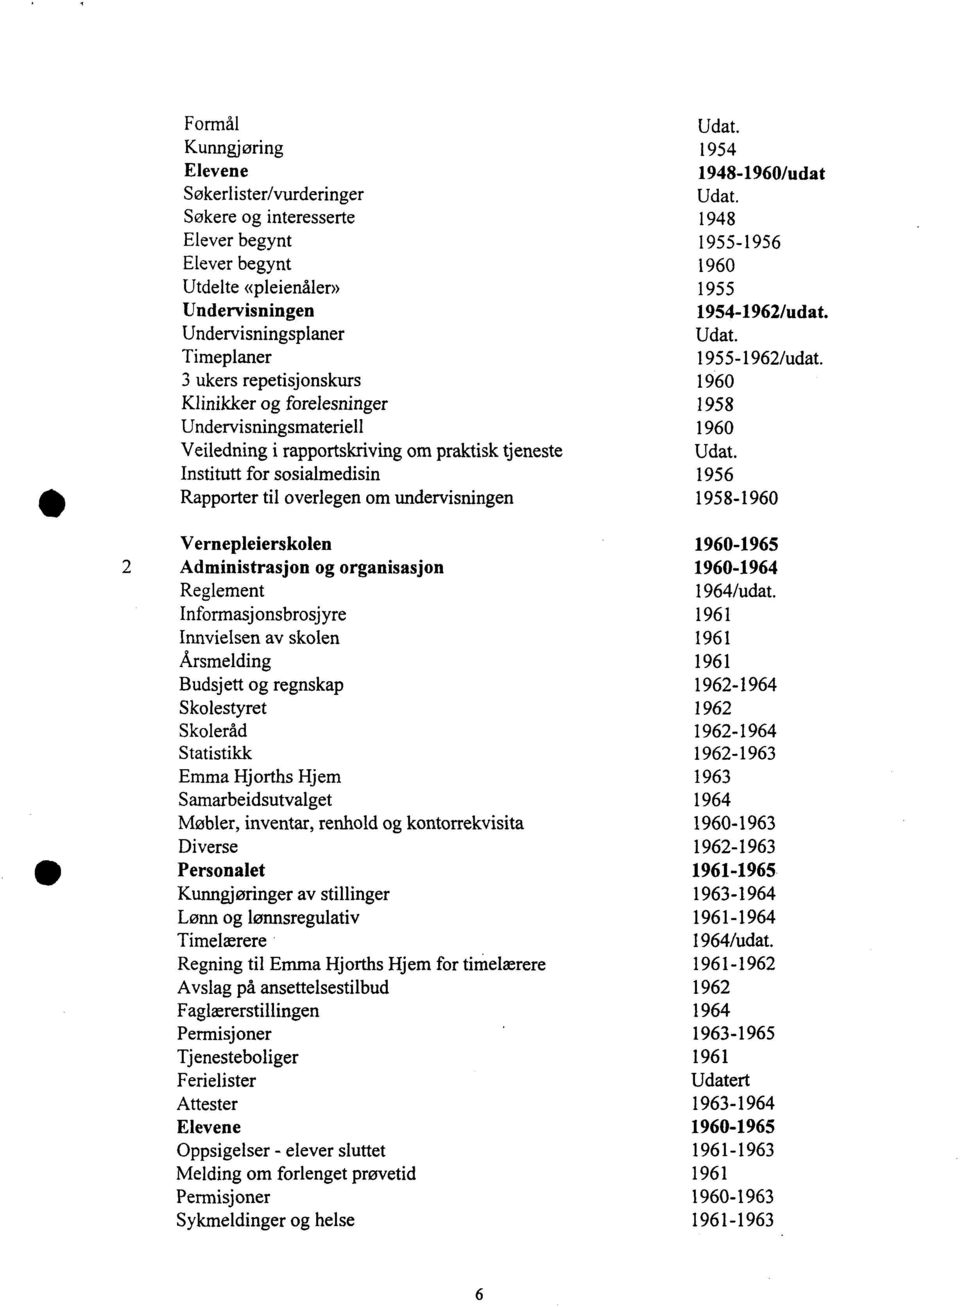 3 ukers repetisjonskurs 1960 Klinikker og forelesninger 1958 Undervisningsmateriell 1960 Veiledning i rapportskriving om praktisk tjeneste Udat.